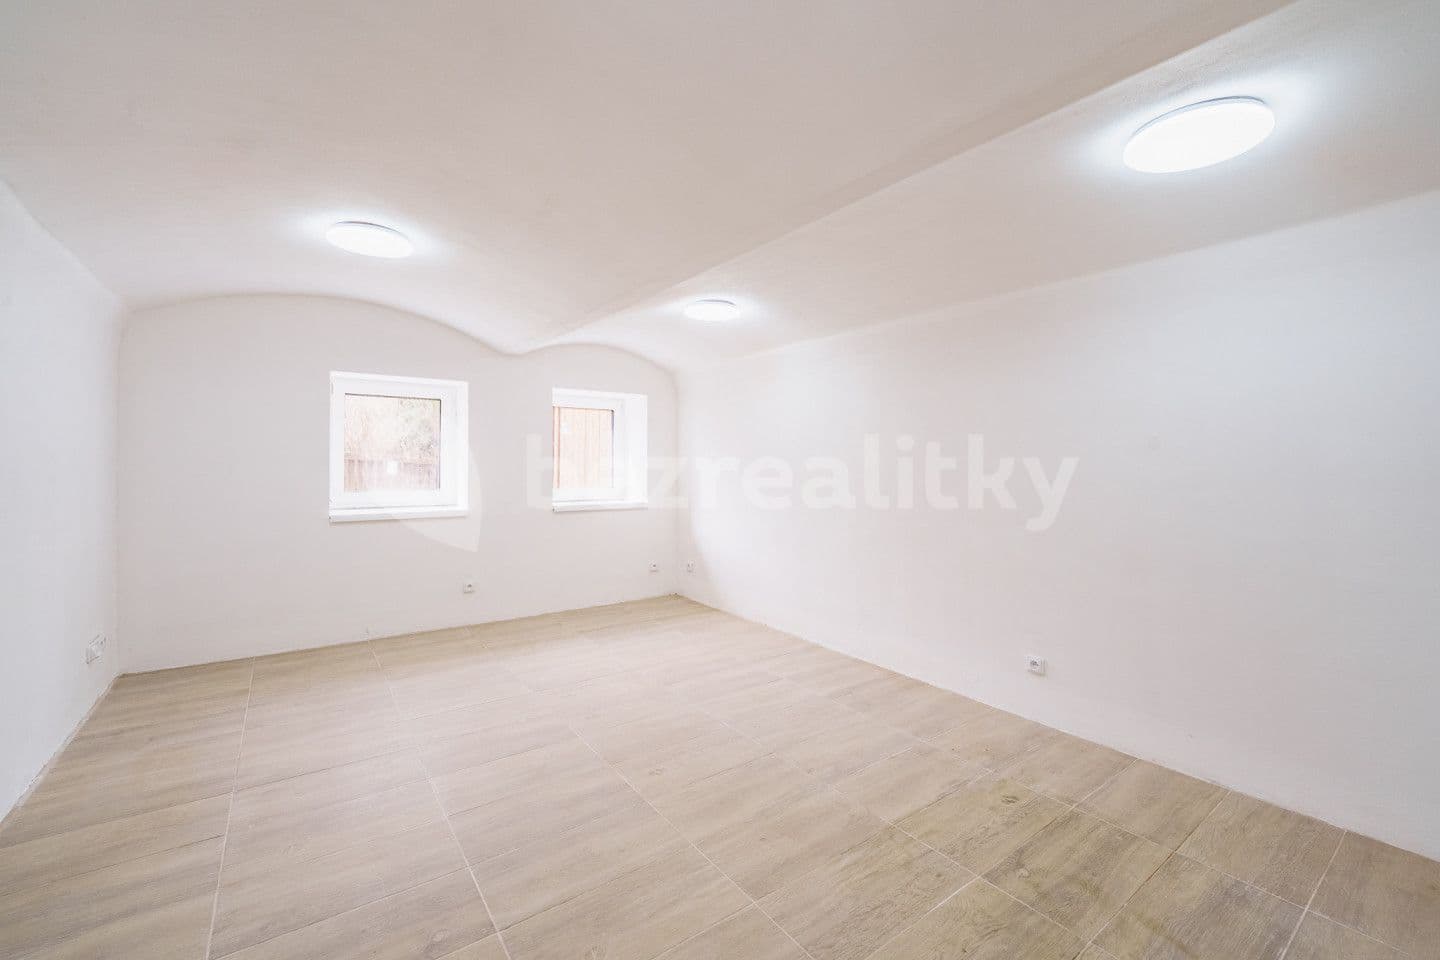 1 bedroom with open-plan kitchen flat for sale, 42 m², Klostermannova, Františkovy Lázně, Karlovarský Region